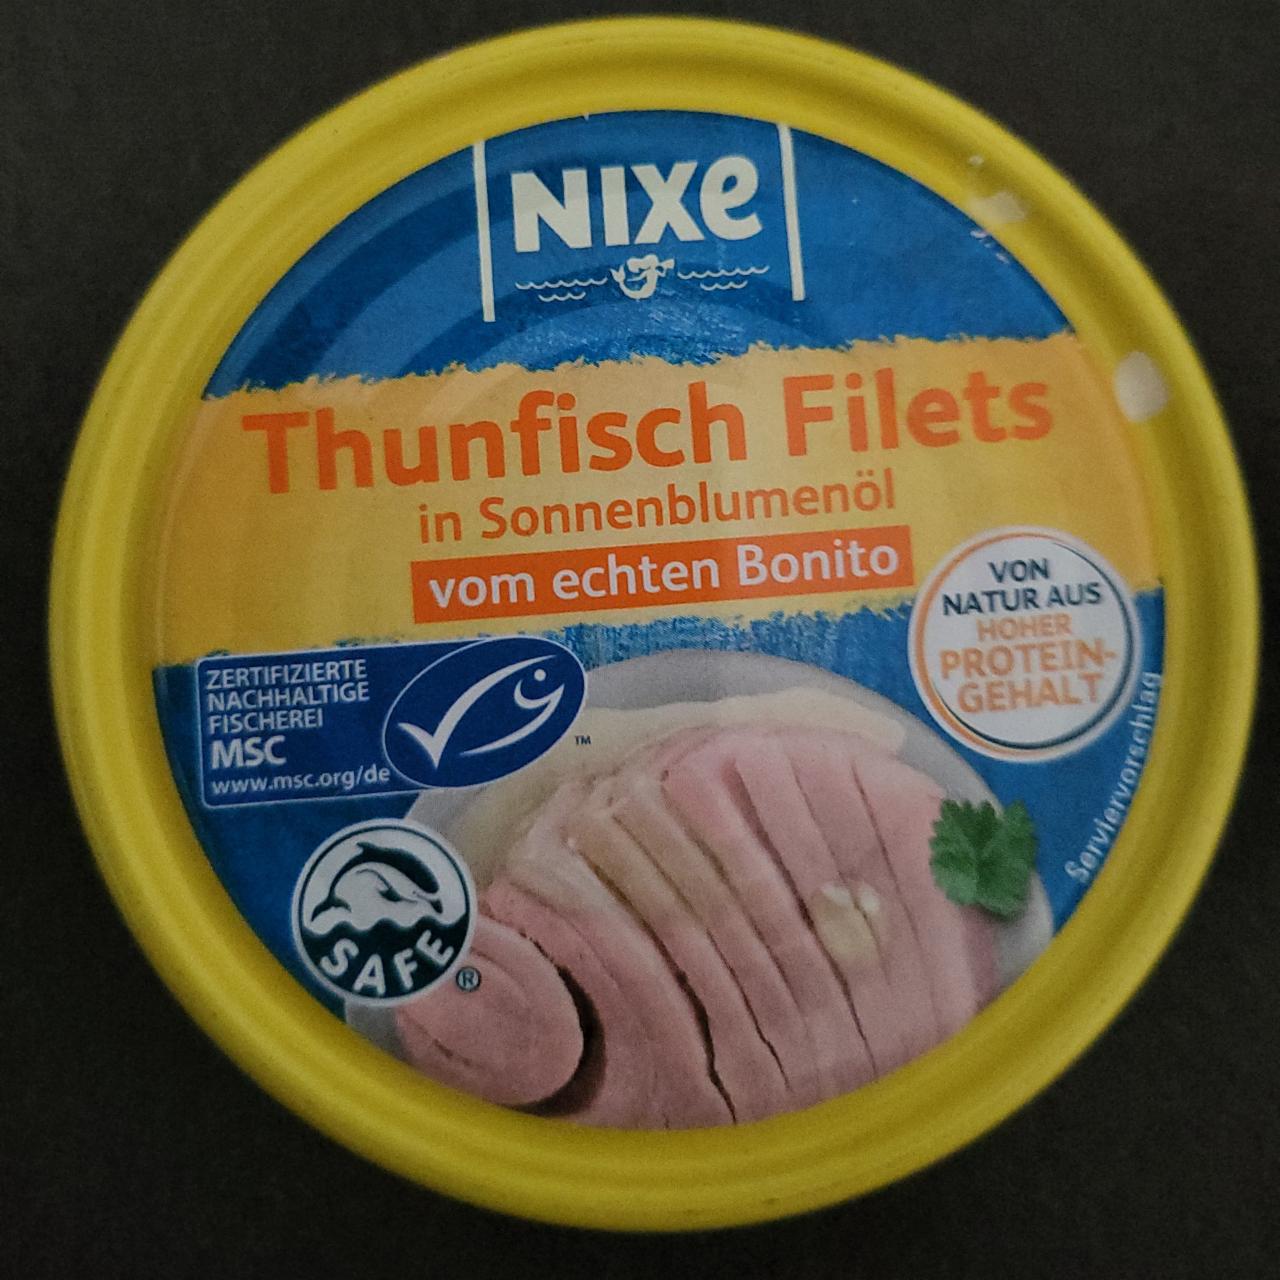 Fotografie - Thunfisch Filets In Sonnenblumenöl Nixe